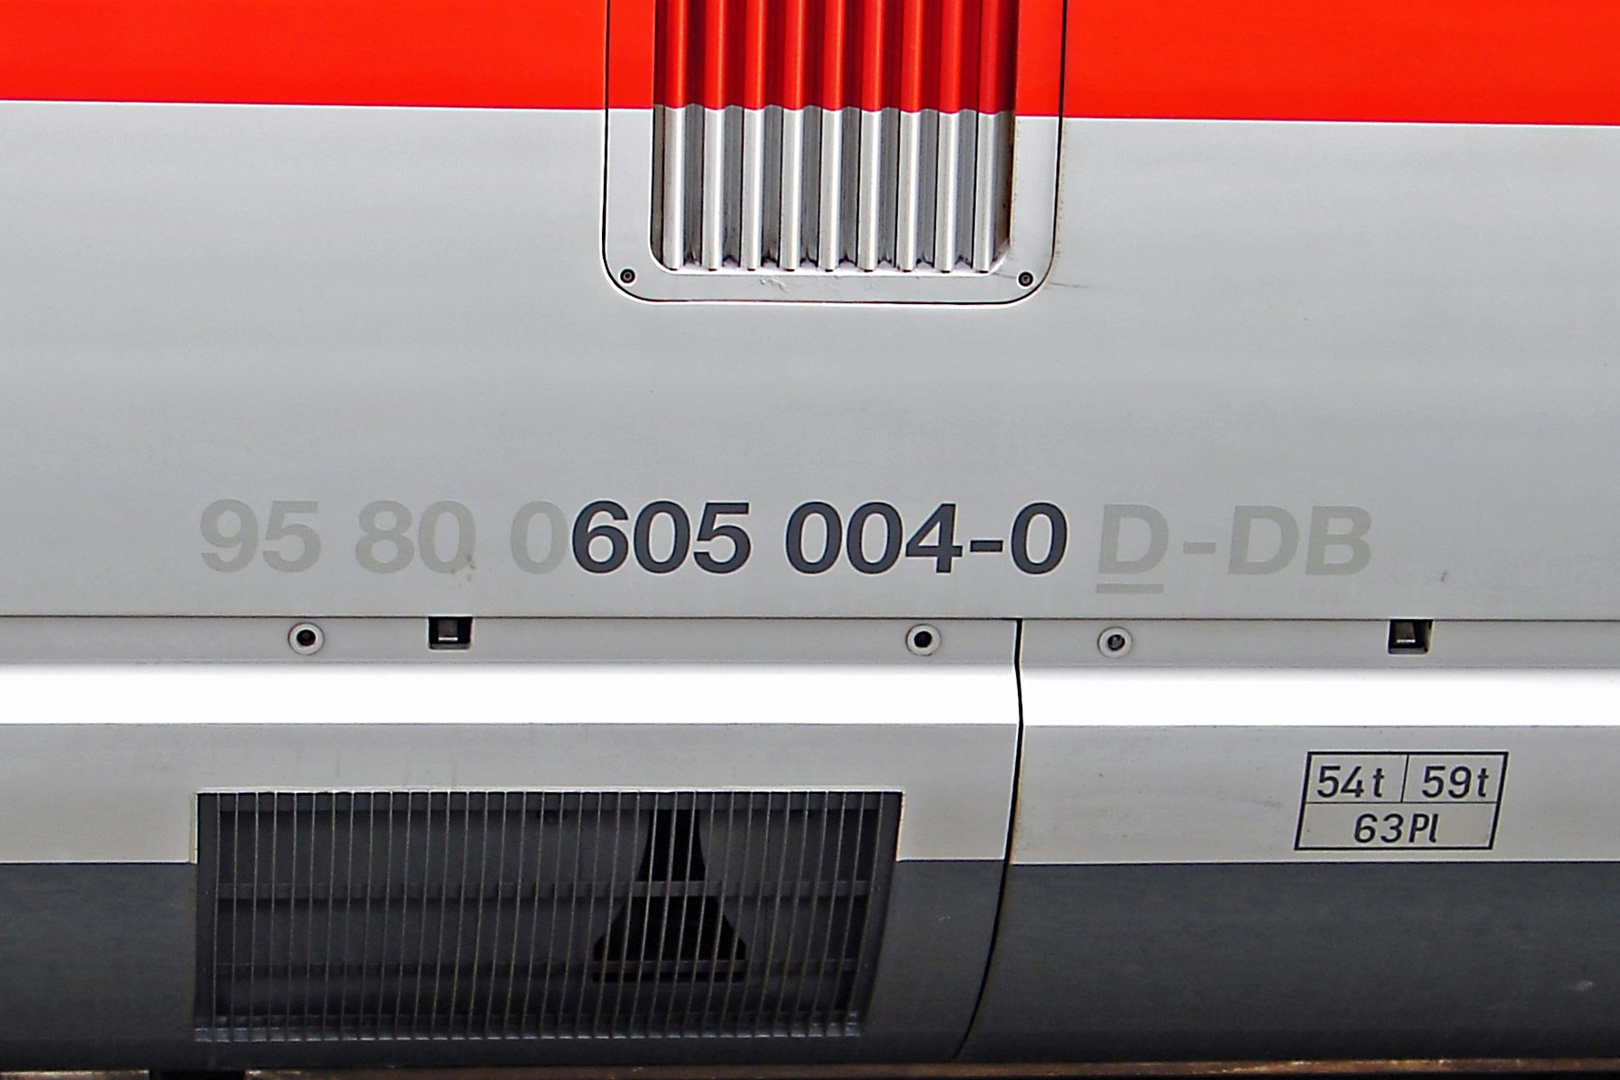 ICE-TD 605 004-0 